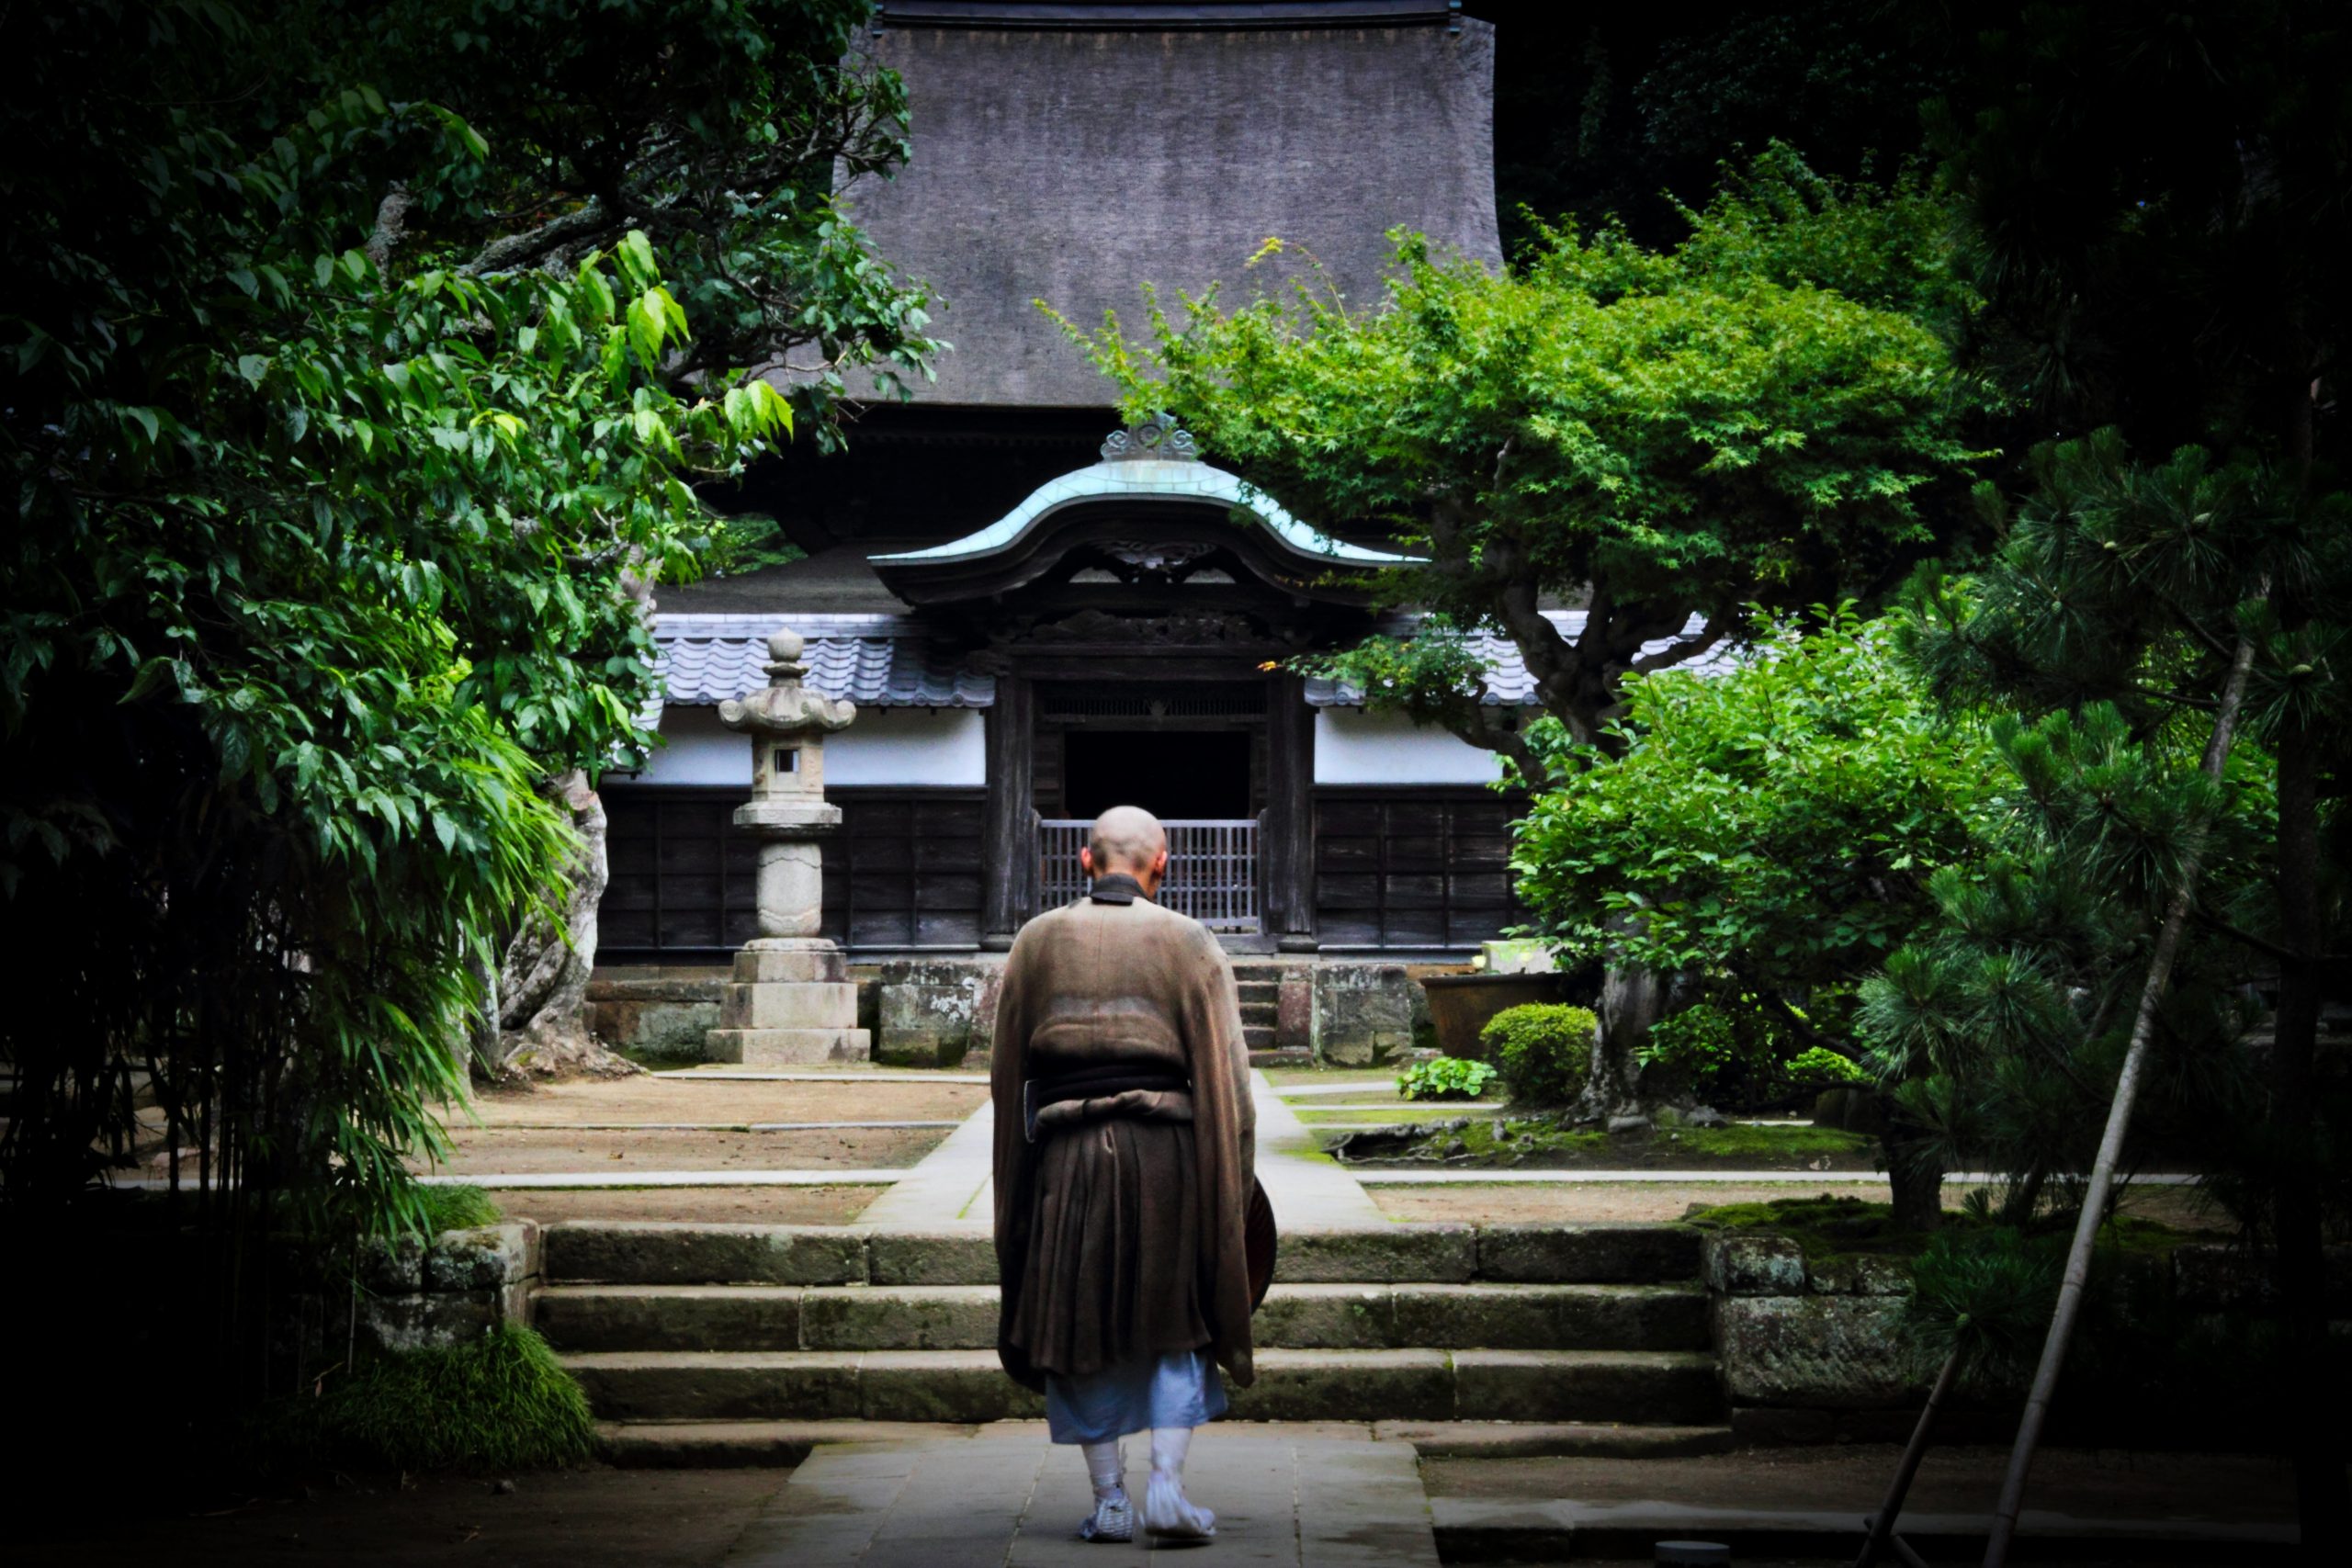 Das Bild zeigt einen Mönch auf dem Weg zu einem Tempel um zu beten.